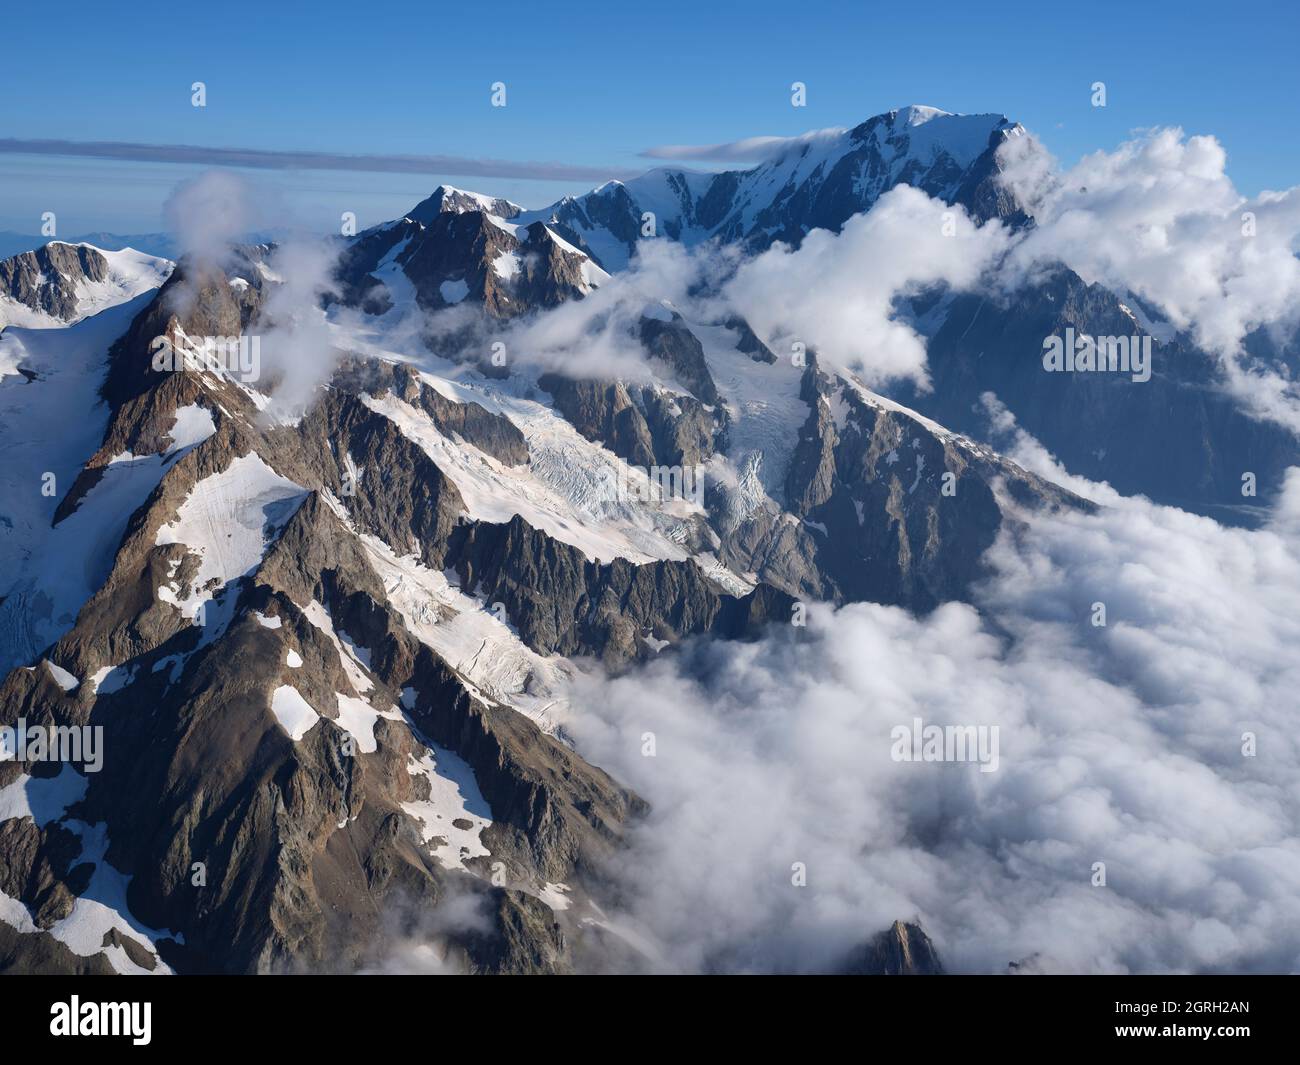 LUFTAUFNAHME. Aiguille des Glaciers, Aiguille de Trè la Tête und Mont Blanc (in der Ferne). Vinschgau, Courmayeur, Aostatal, Italien. Stockfoto